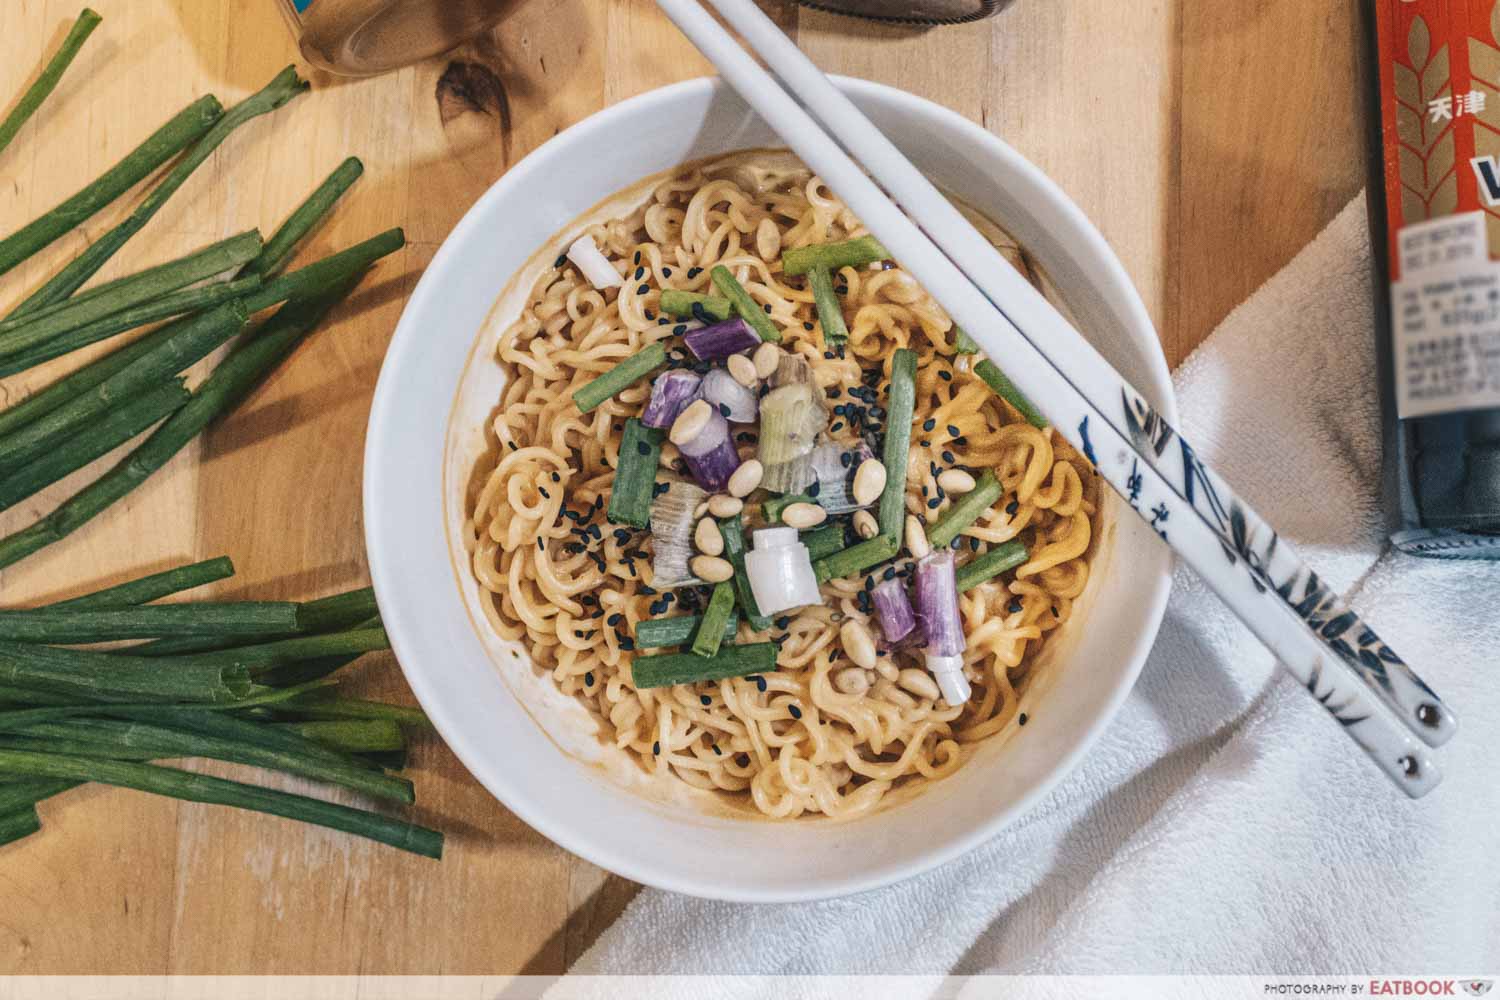 Instant Noodles Recipes - Dan Dan Mian